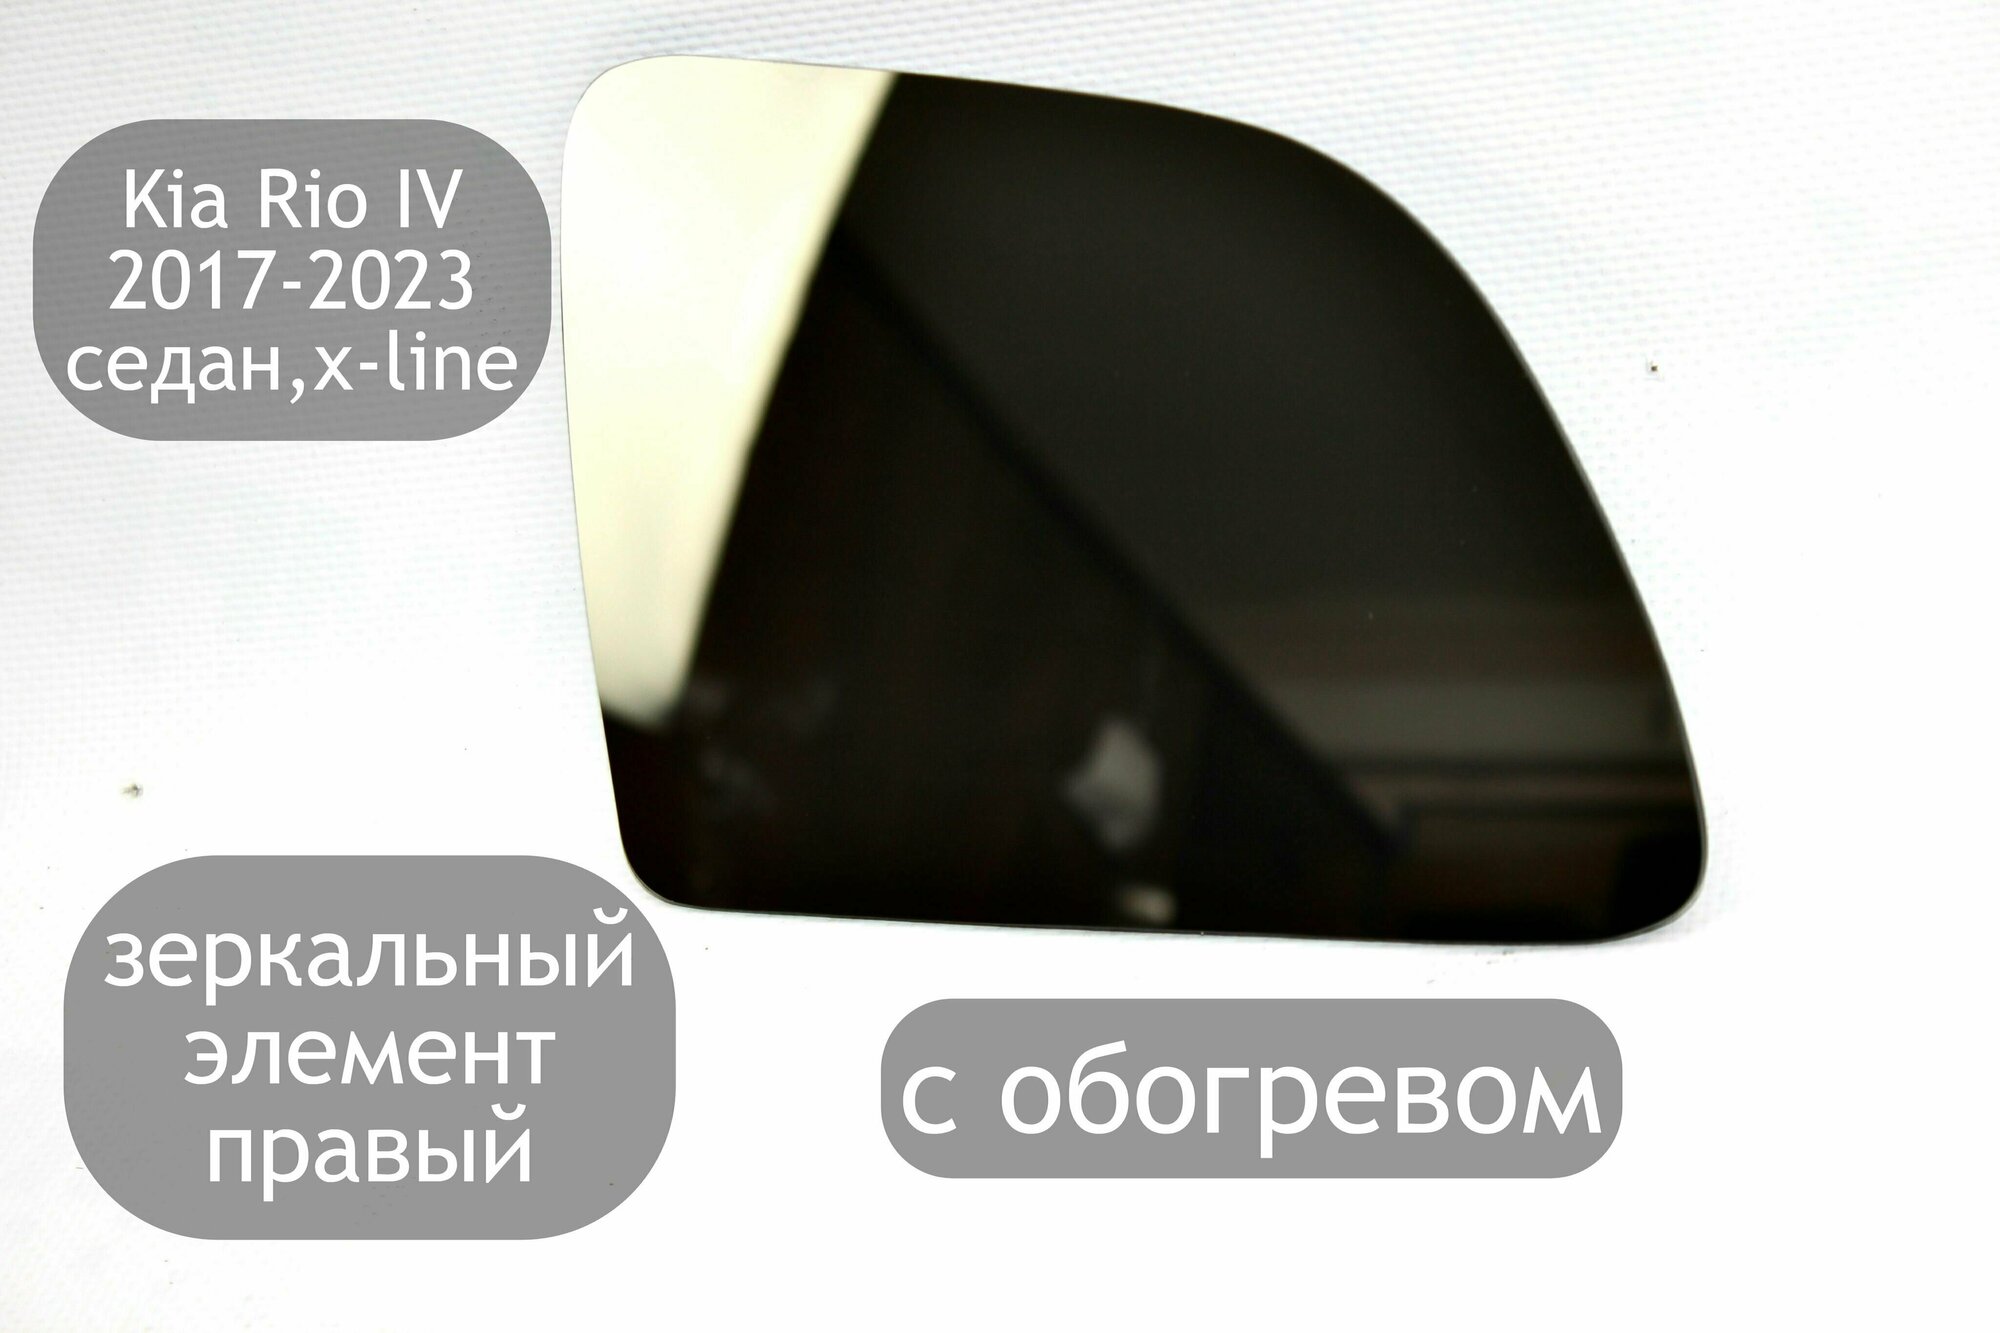 Зеркальный элемент правый с обогревом для Kia Rio 4 2017-2023 седан x-line